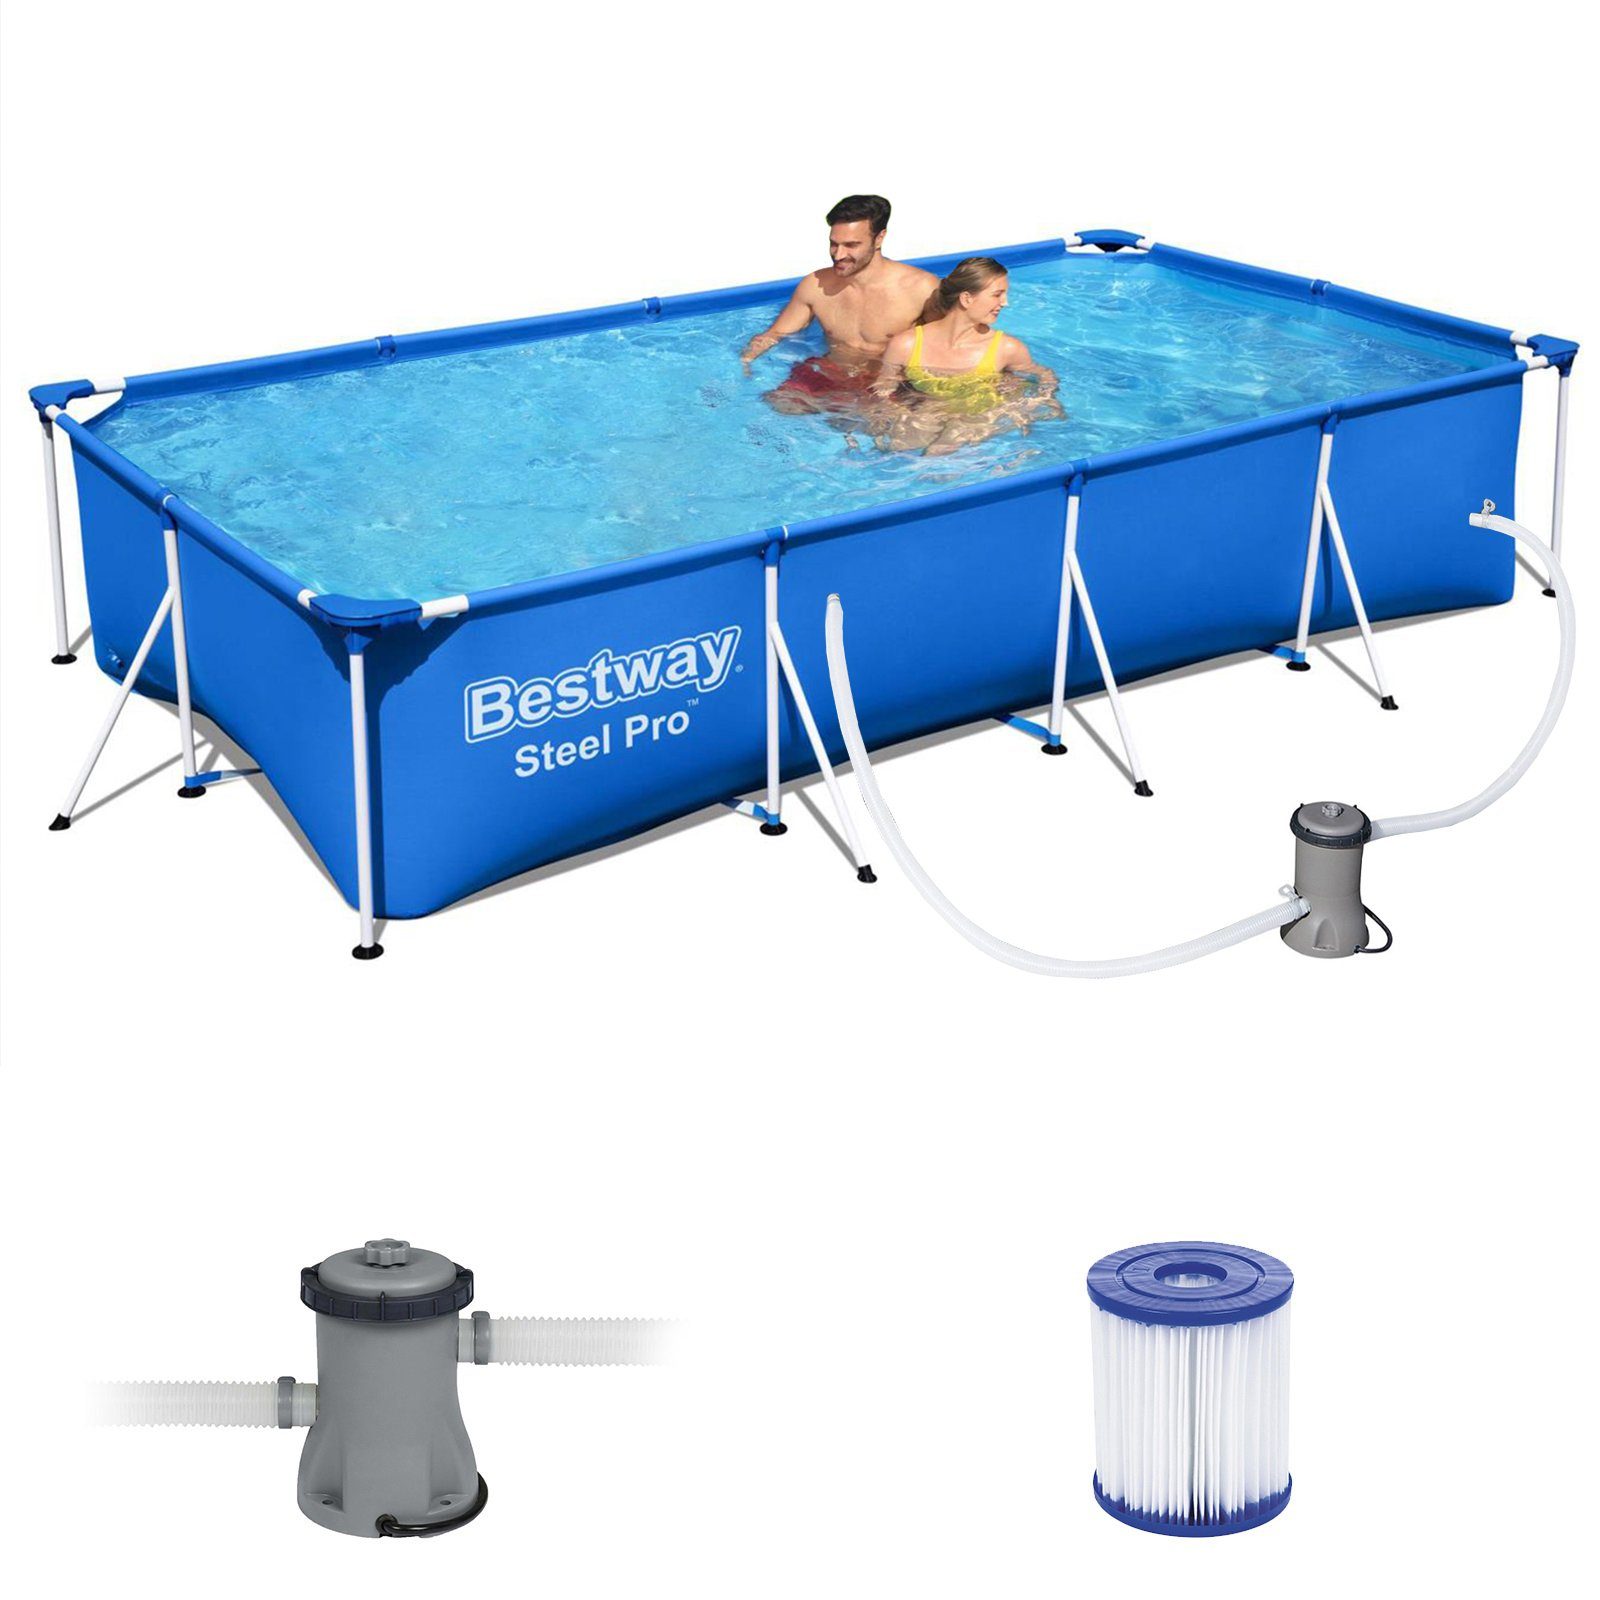 BESTWAY Framepool Steel Pro Pool Swimmingpool Set Filterpumpe Kartusche  400x211x81cm (56424), Bestway Steel Pr Frame Pool